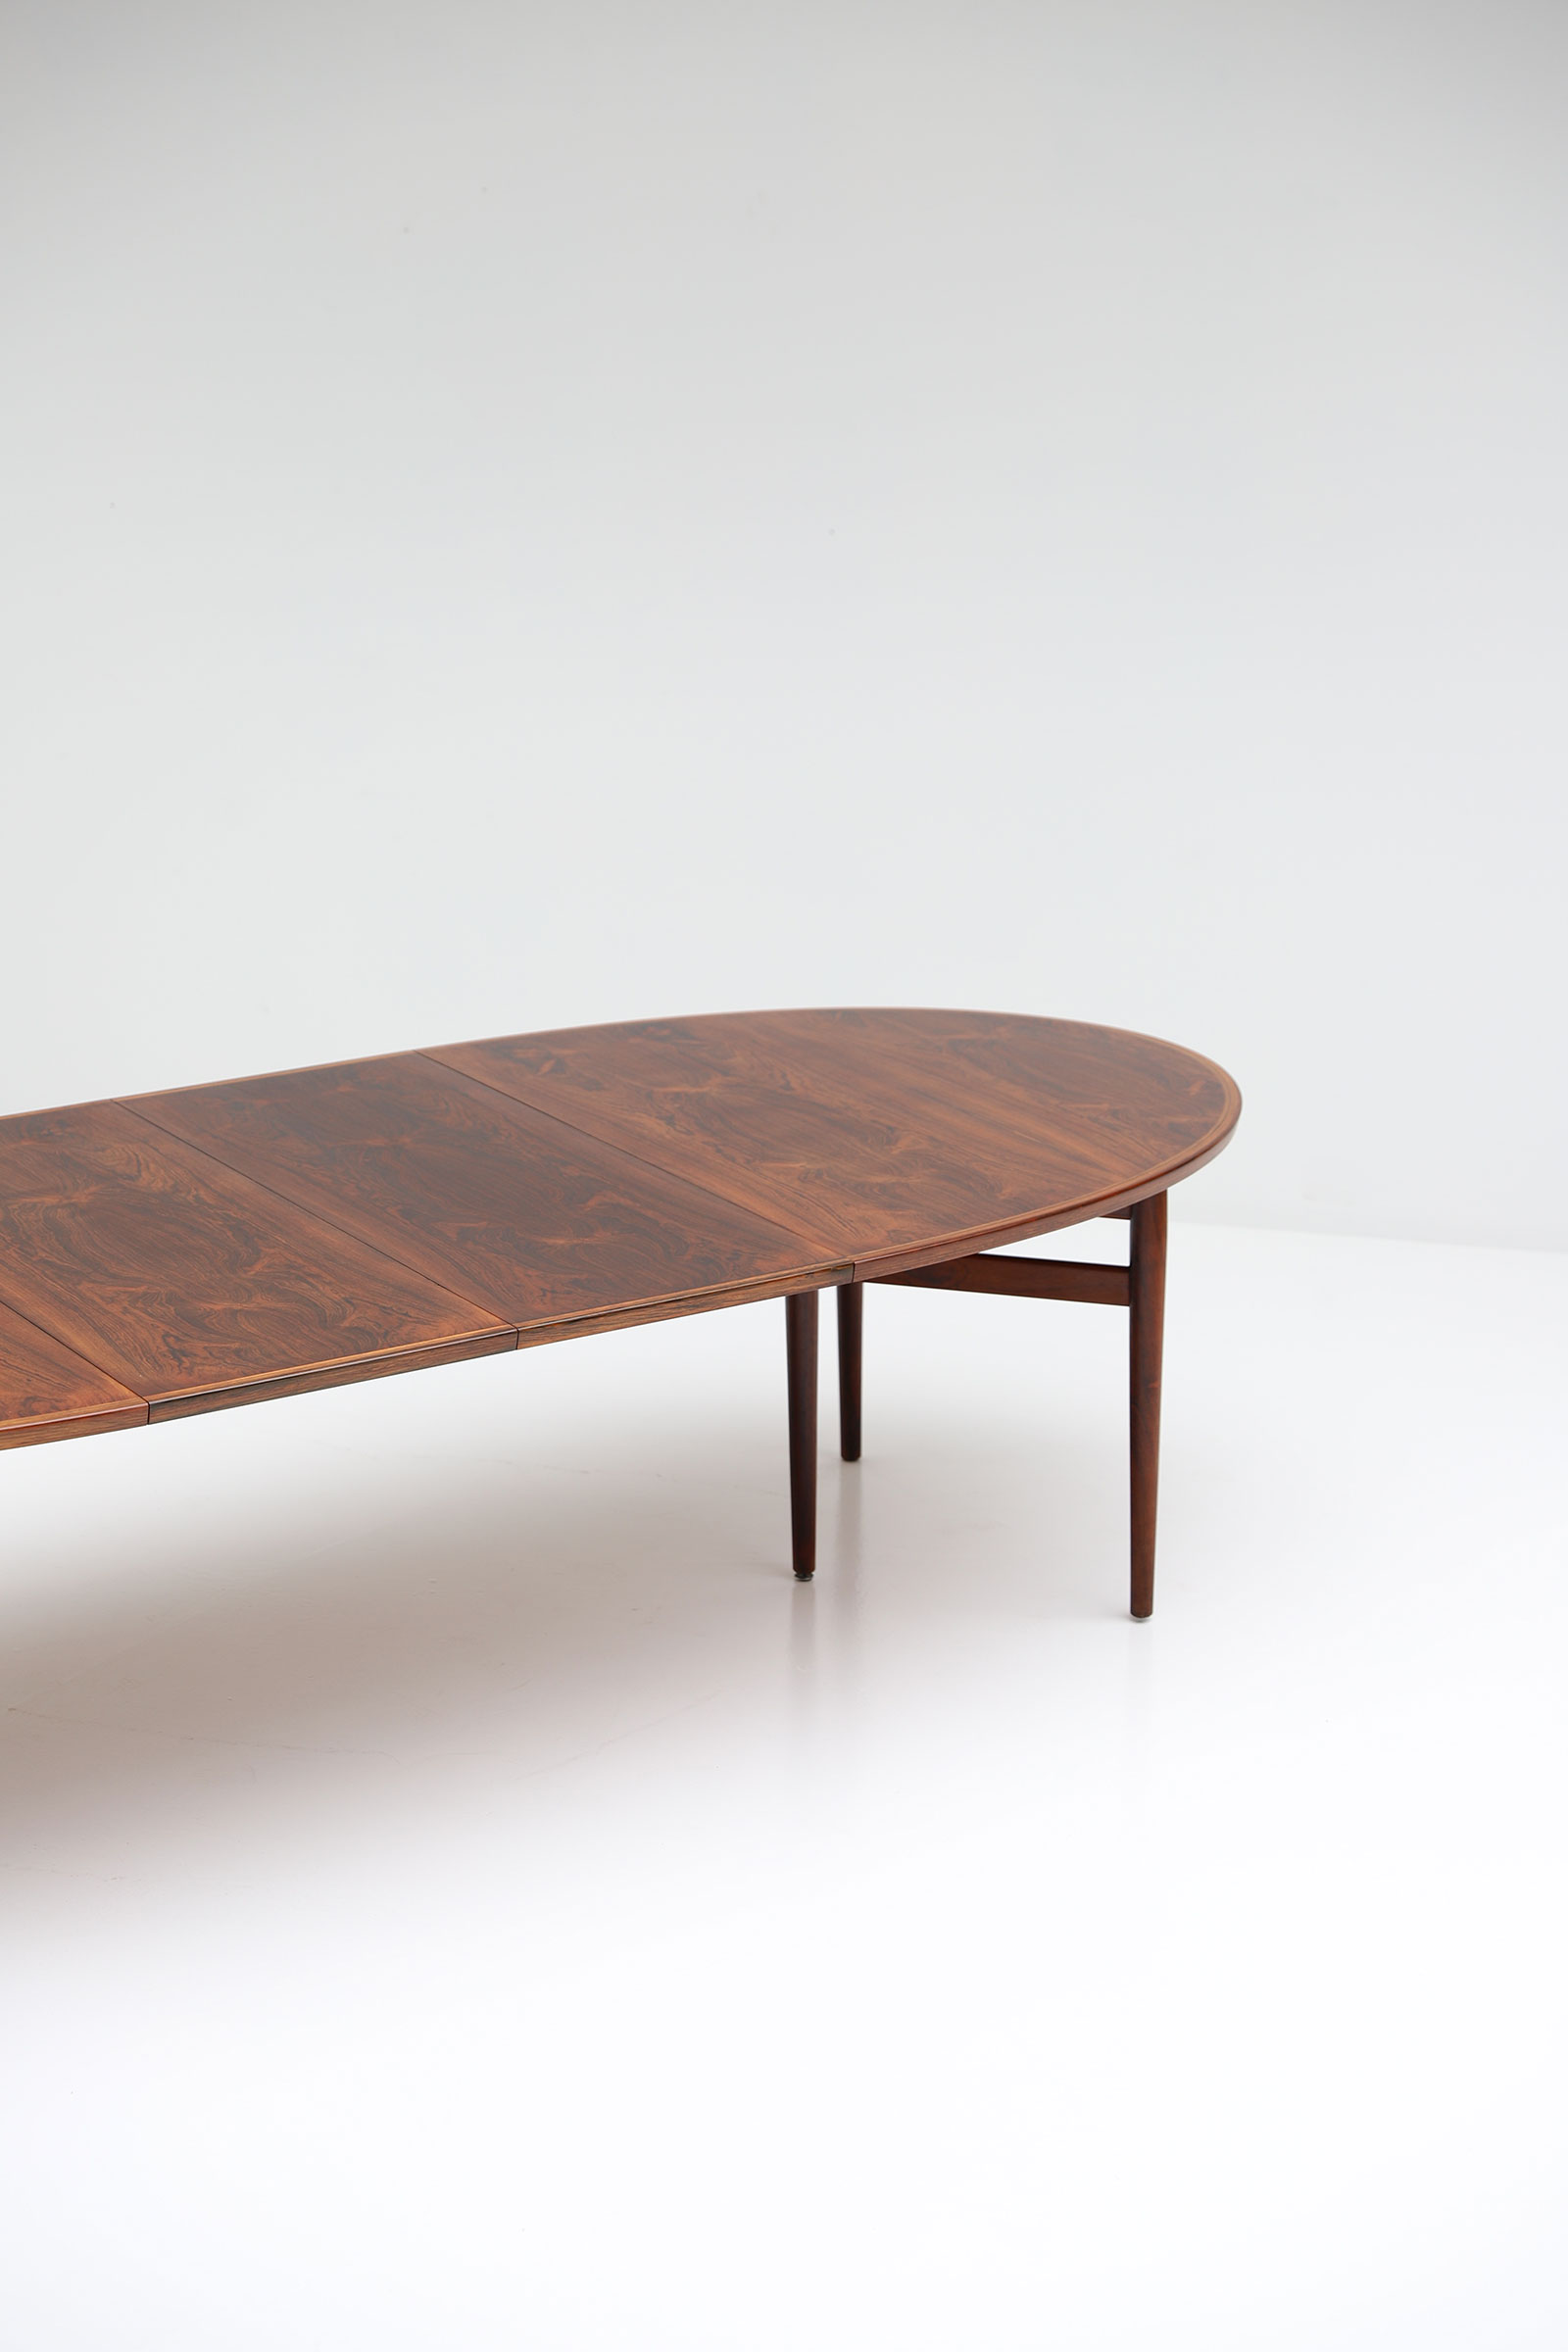 Arne Vodder Oval Dining Table model 212image 5